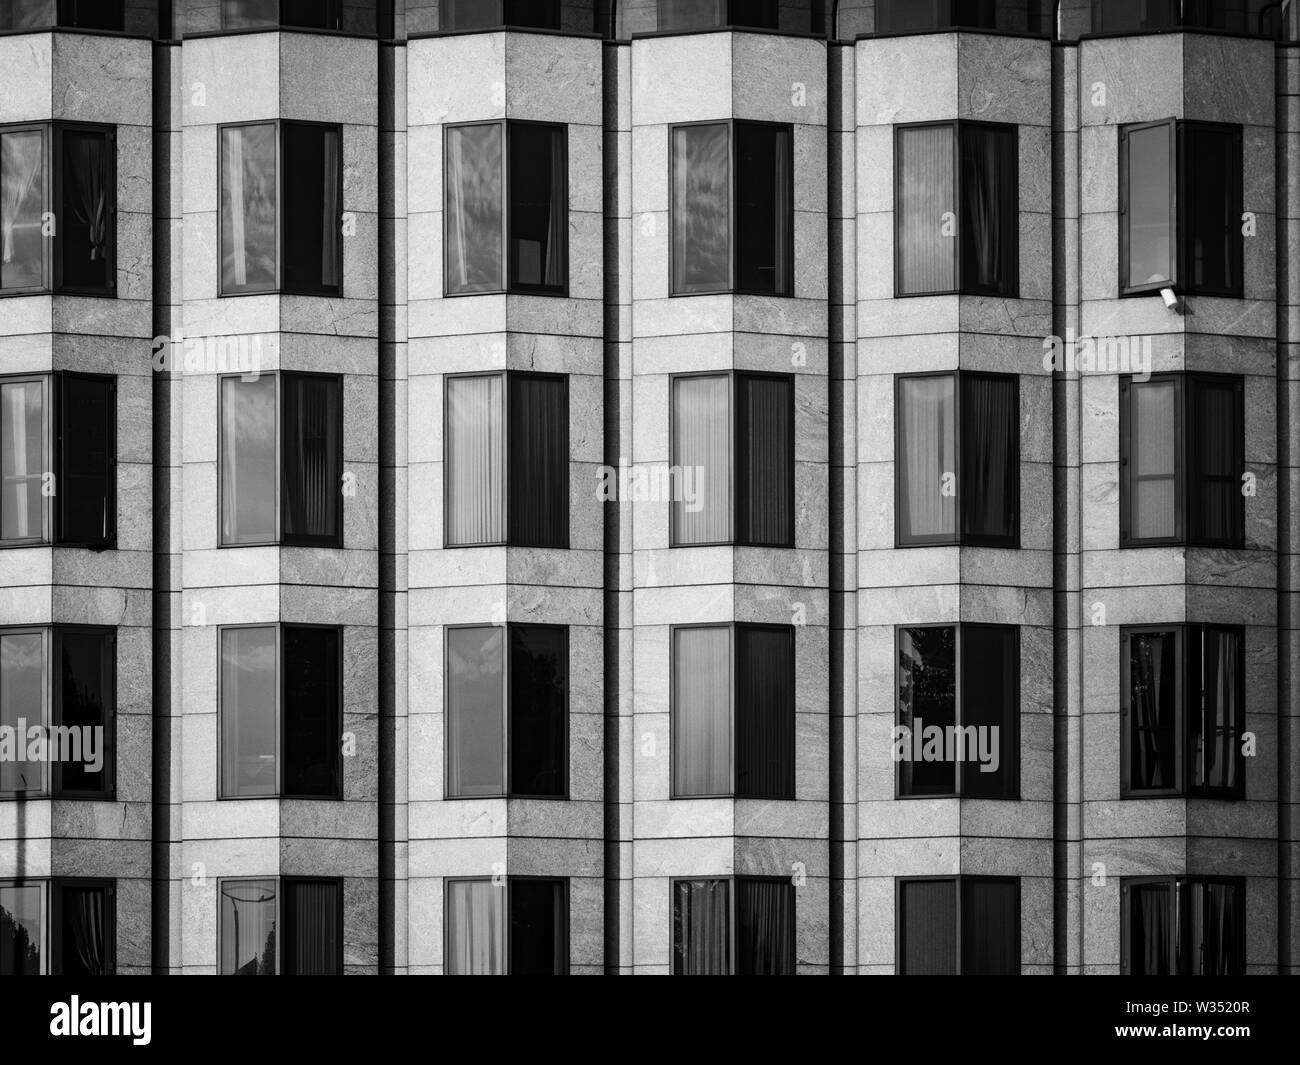 Un noir et blanc, image abstraite de l'angle de windows sur l'avant d'un bâtiment moderne Banque D'Images